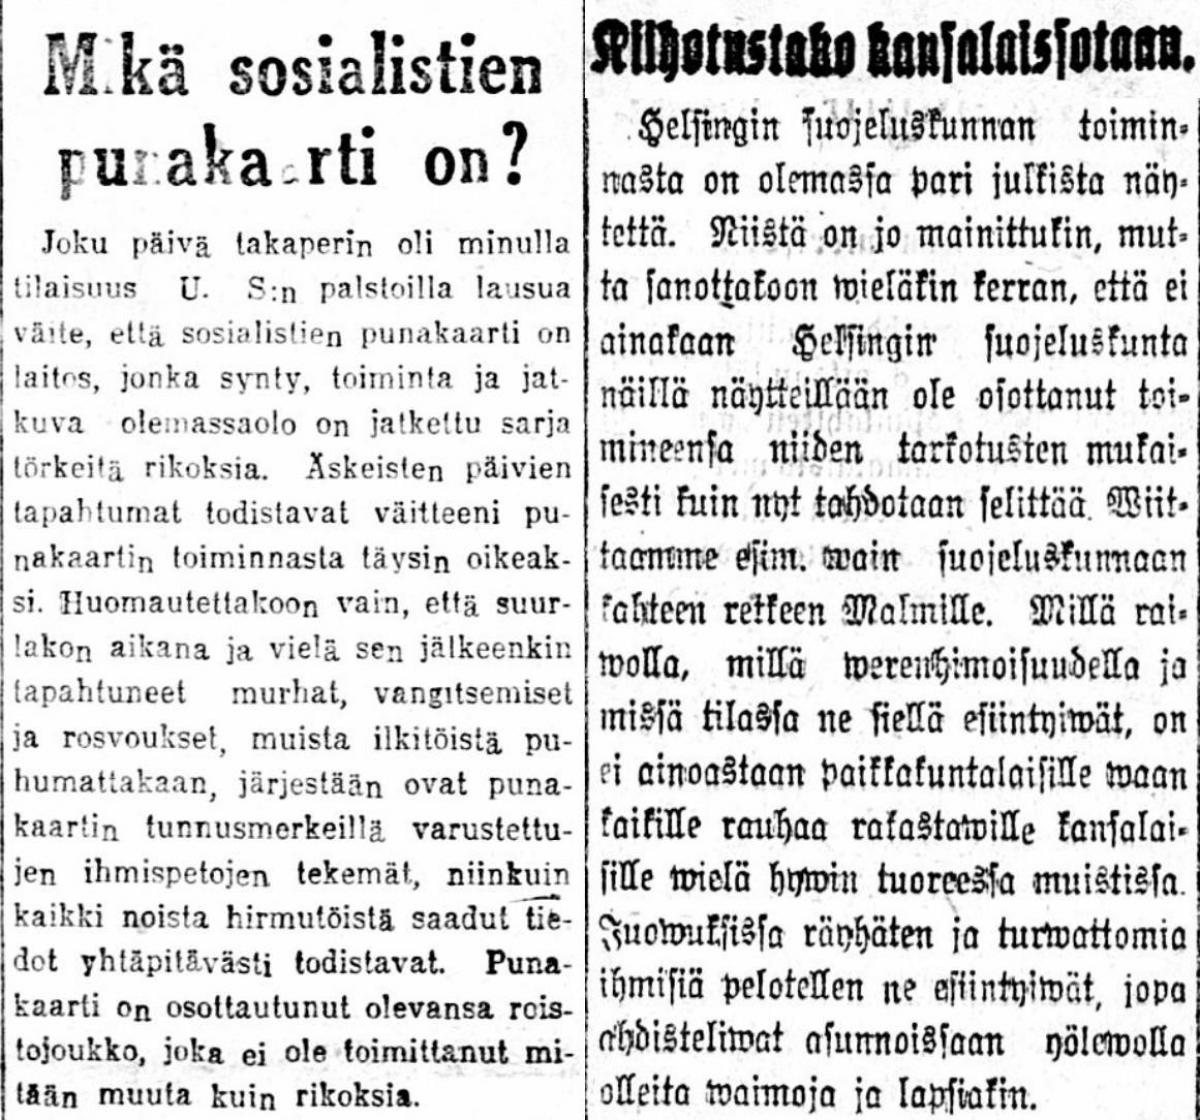 Kaksi lehtileikettä, joista toisessa kritisoidaan työväen punakaartien, toisessa suojeluskuntien toimintaa vuonna 1917.